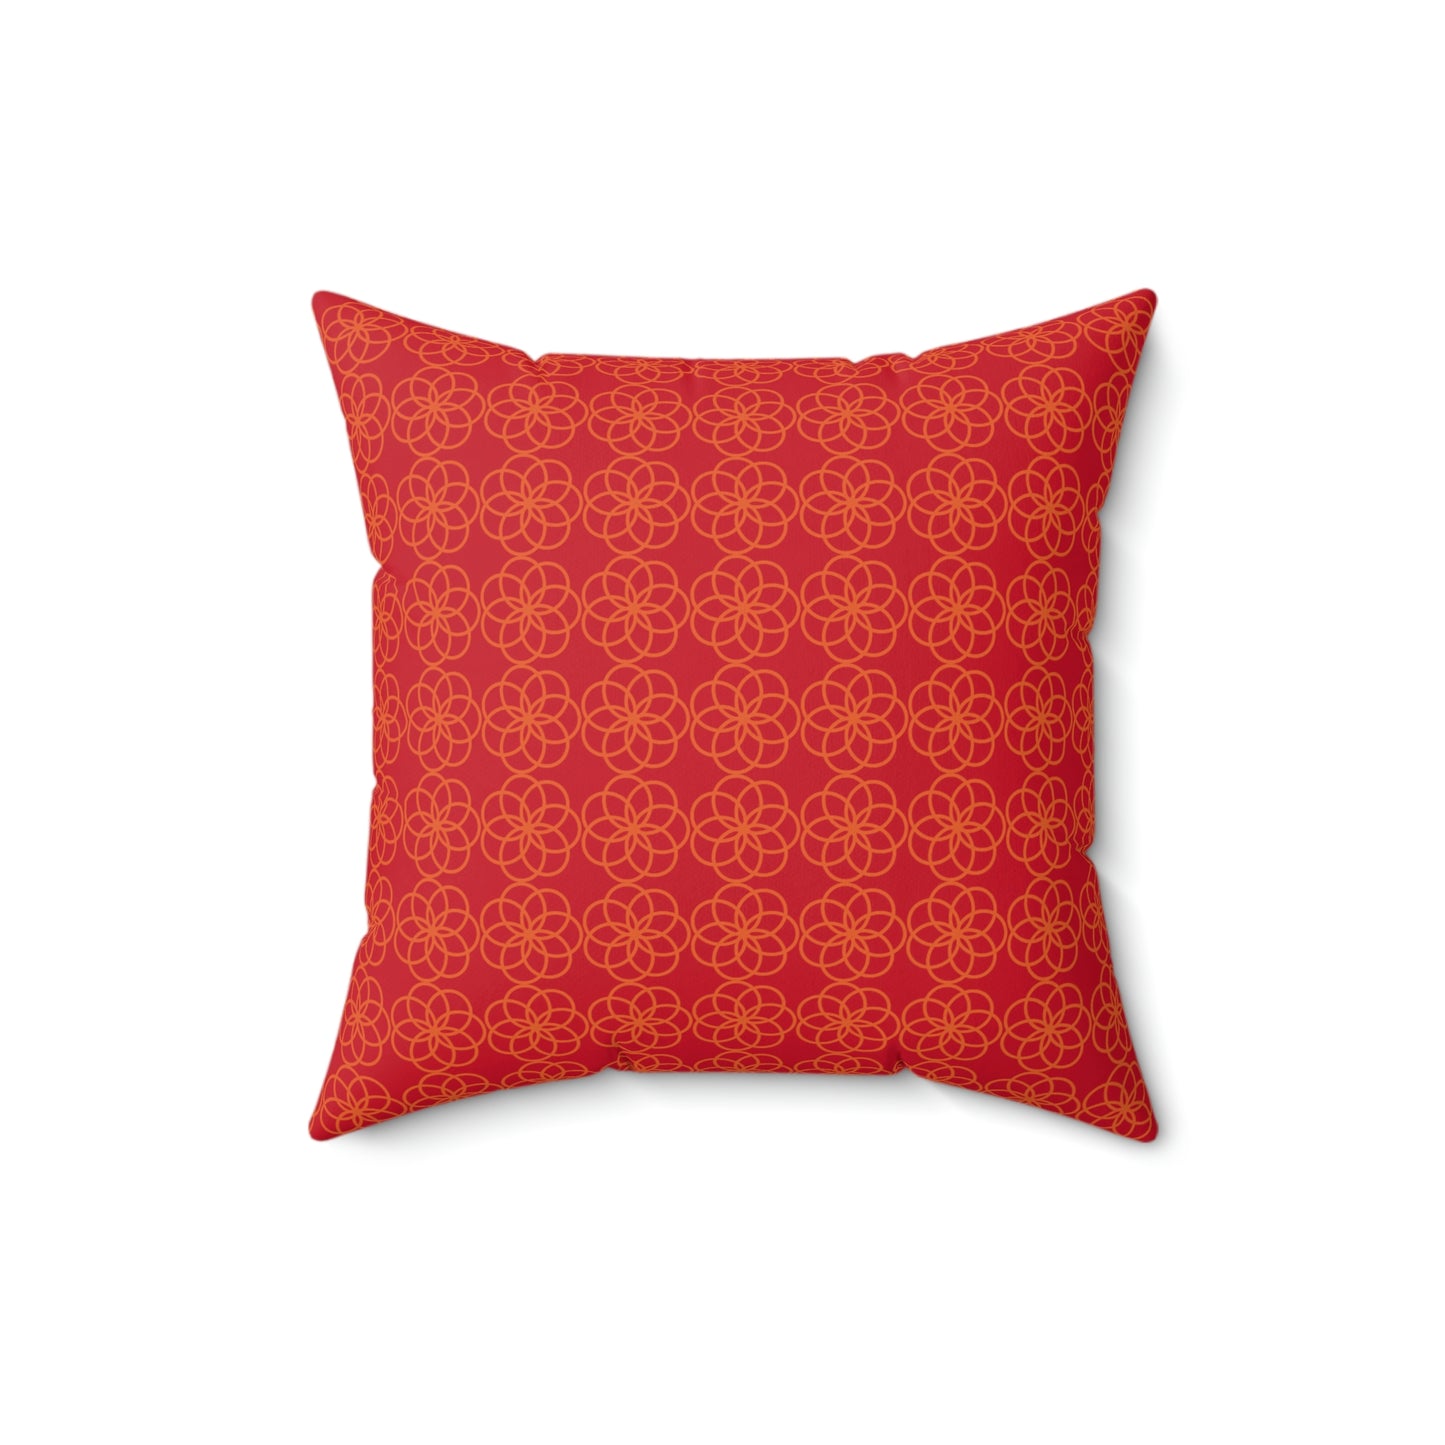 Spun Polyester Square Pillow Case “Spiral Circles on Dark Red”